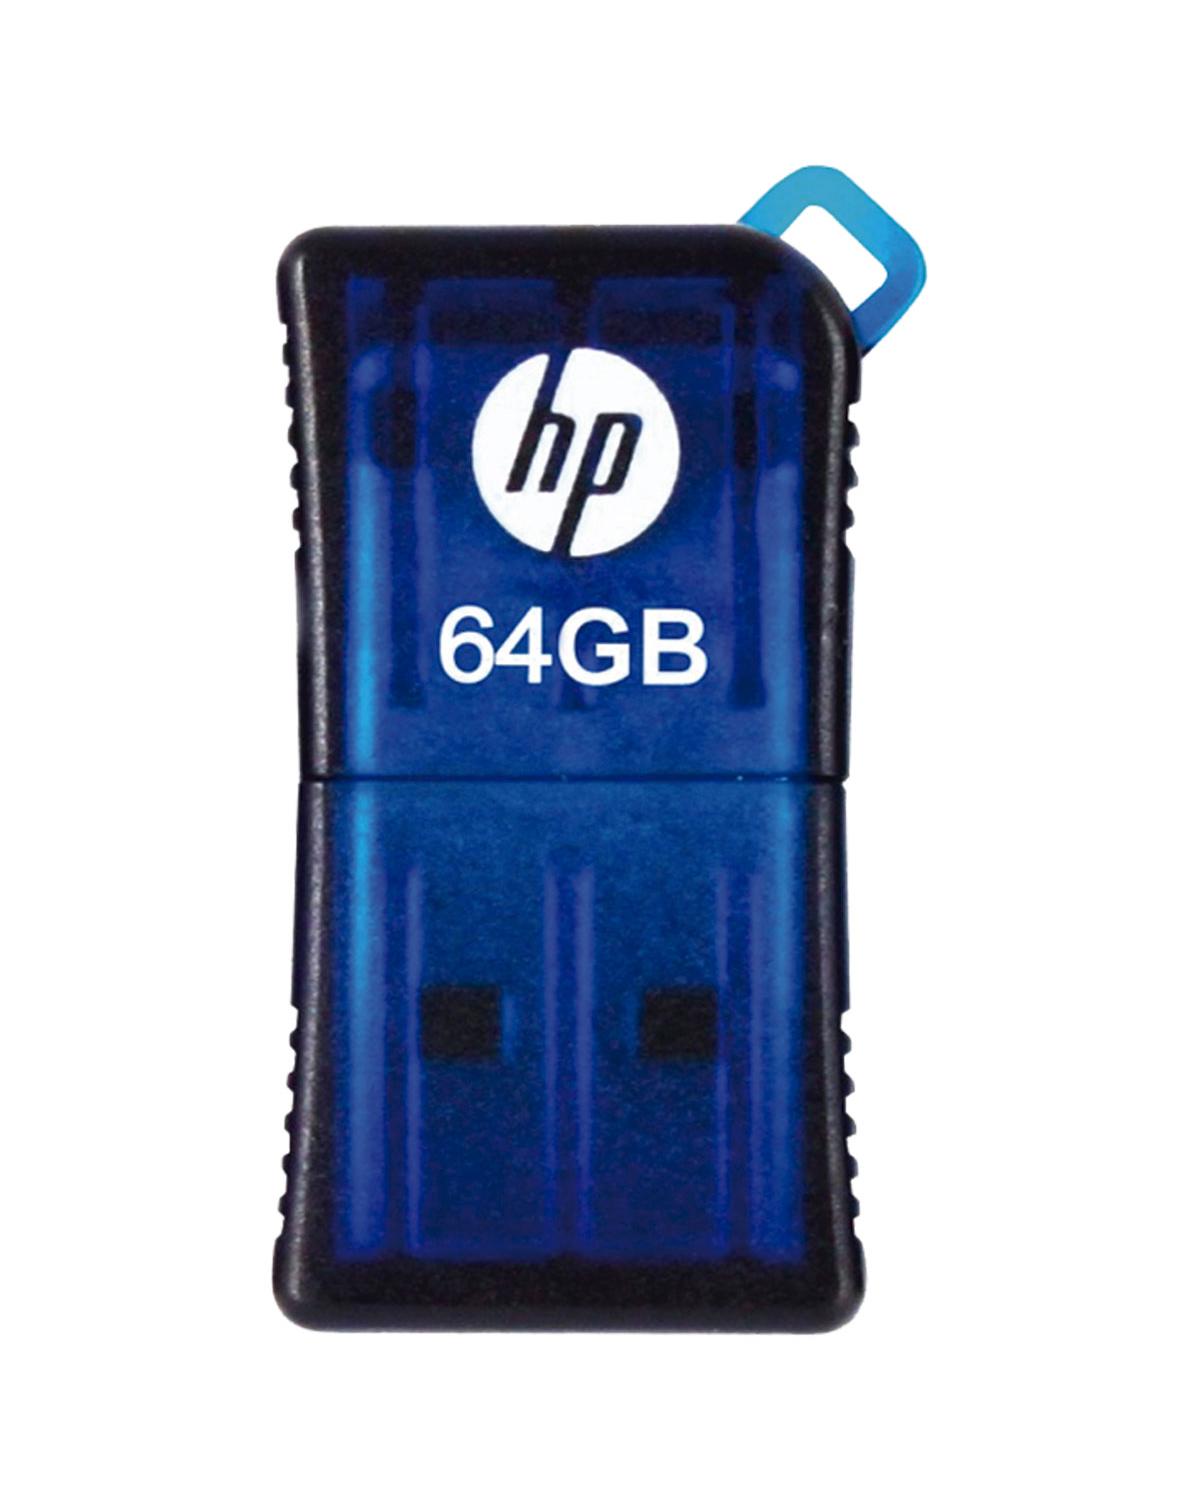 PEN DRIVE MINI HP USB 2.0 V165W 64GB  HPFD165W2-64